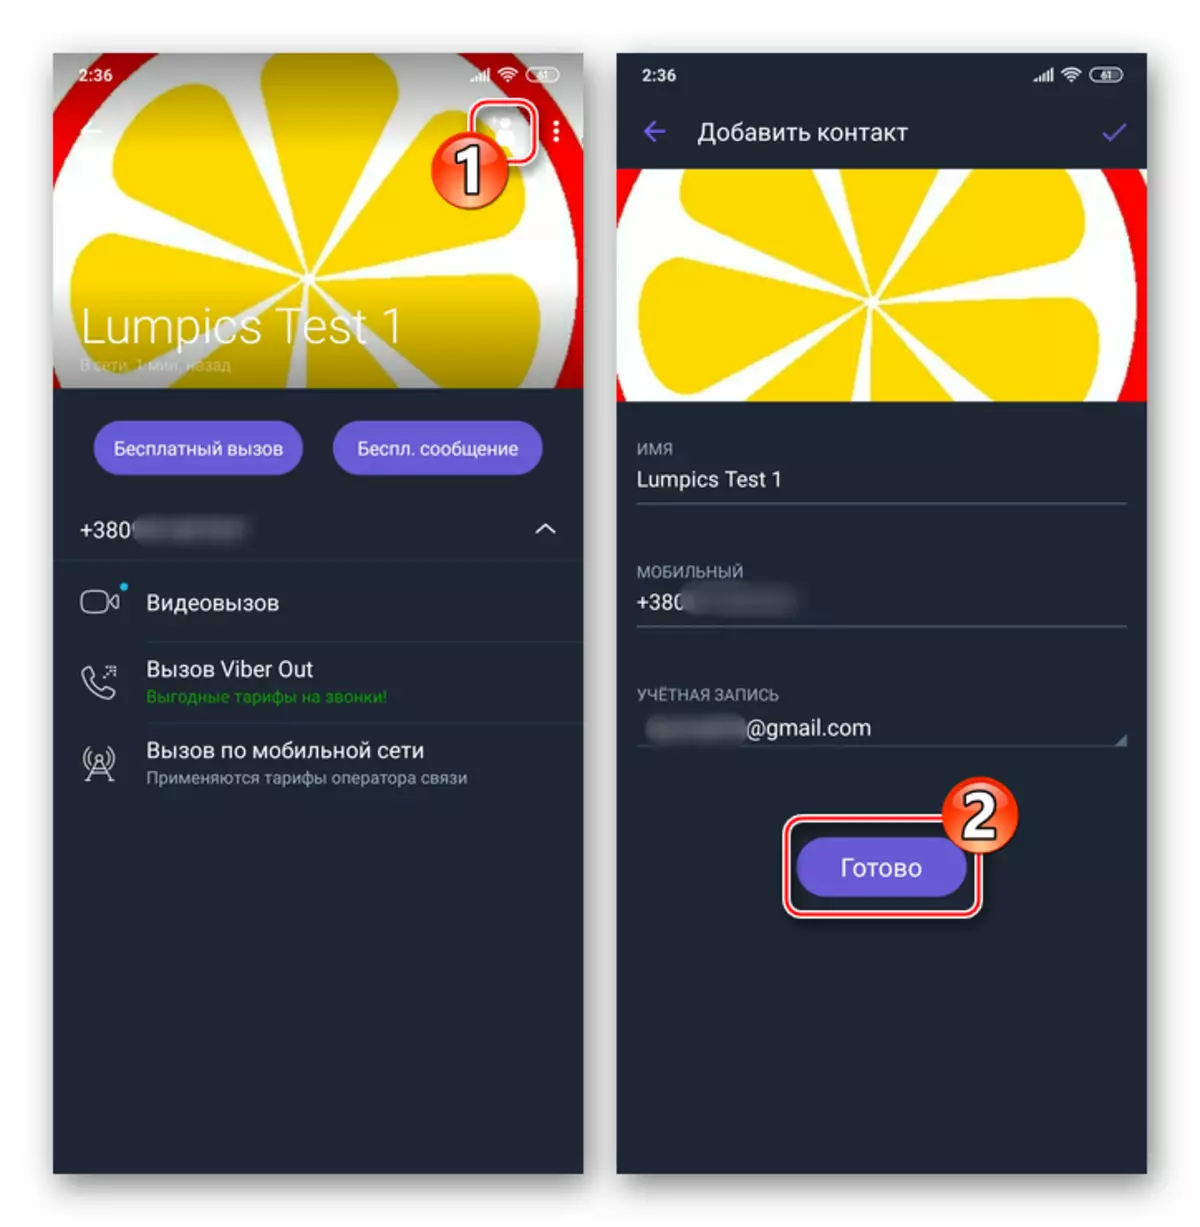 Viber dla Androida zapisywania innych danych użytkownika do kontaktów Messenger